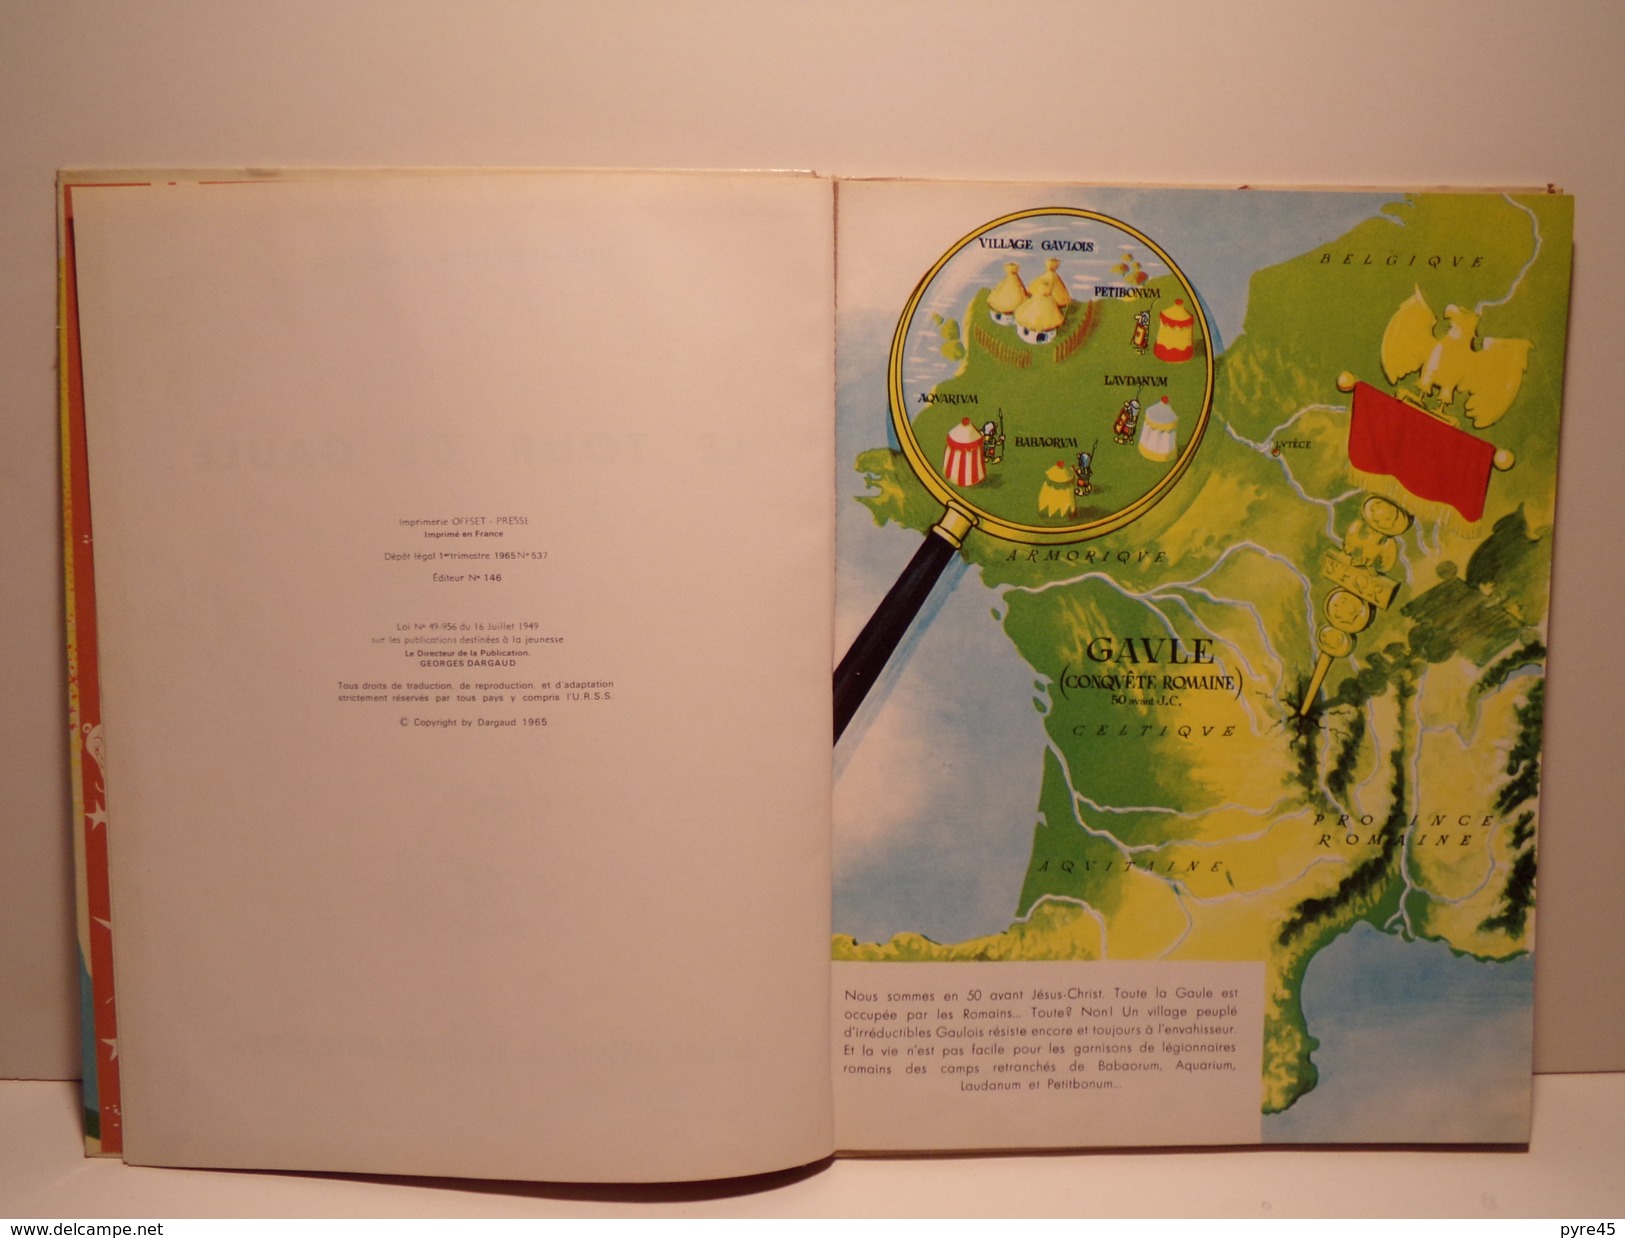 Une Aventure D'Astérix Le Gaulois Le Tour De Gaule D'Astérix éditeur Dargaud 1965 ( Intérieur Abimé ) - Kador